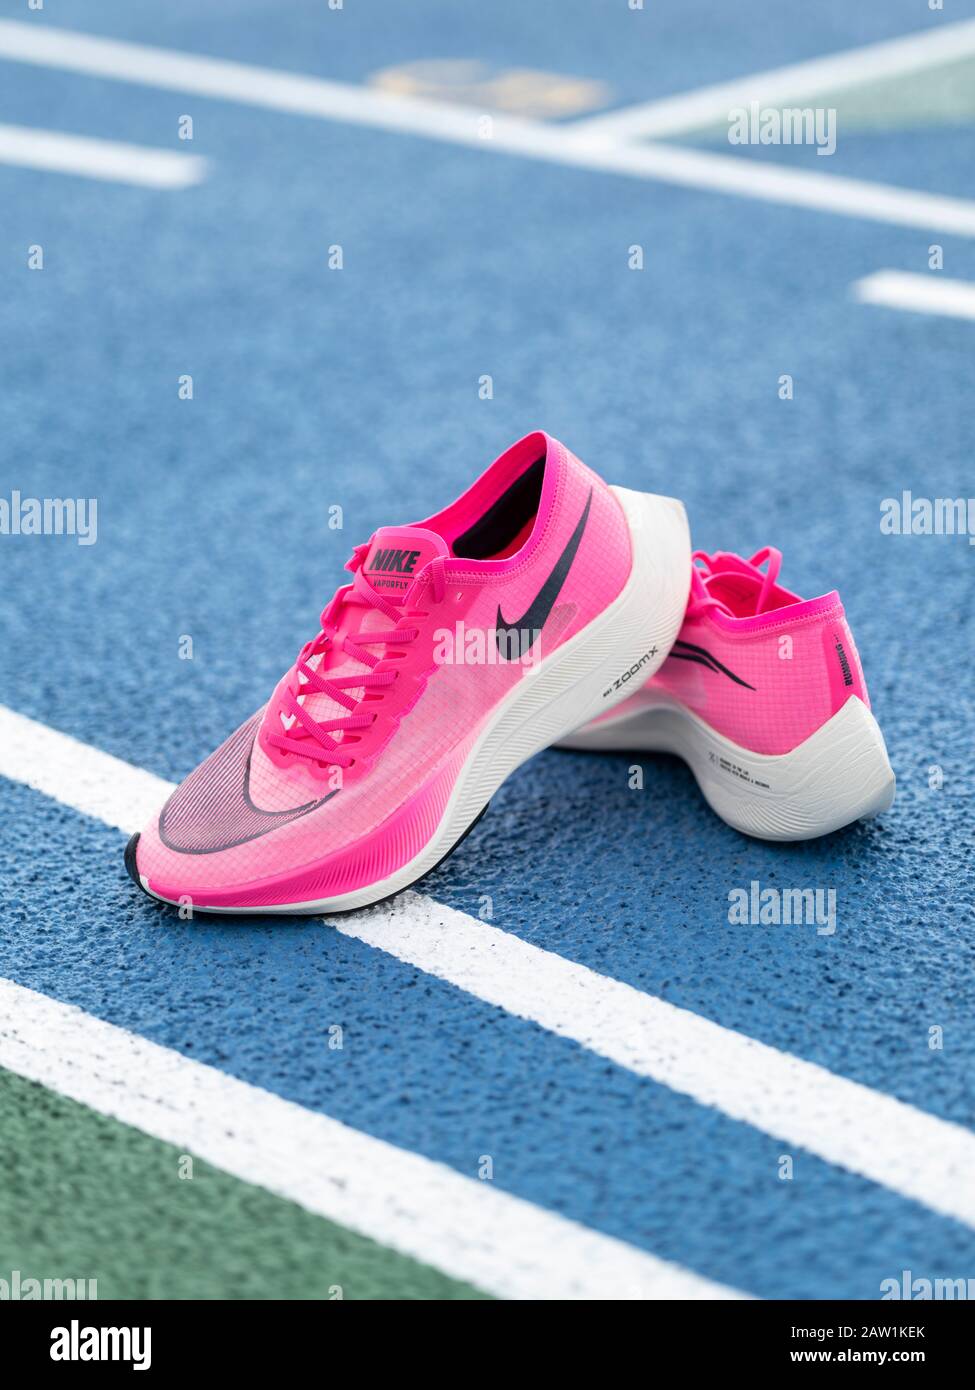 Las zapatillas de running Nike ZoomX Vaporfly Next% en color rosa (Rosa  Blast/Guava Ice/Black) son un aeroero de carbono que rompe récords  Fotografía de stock - Alamy